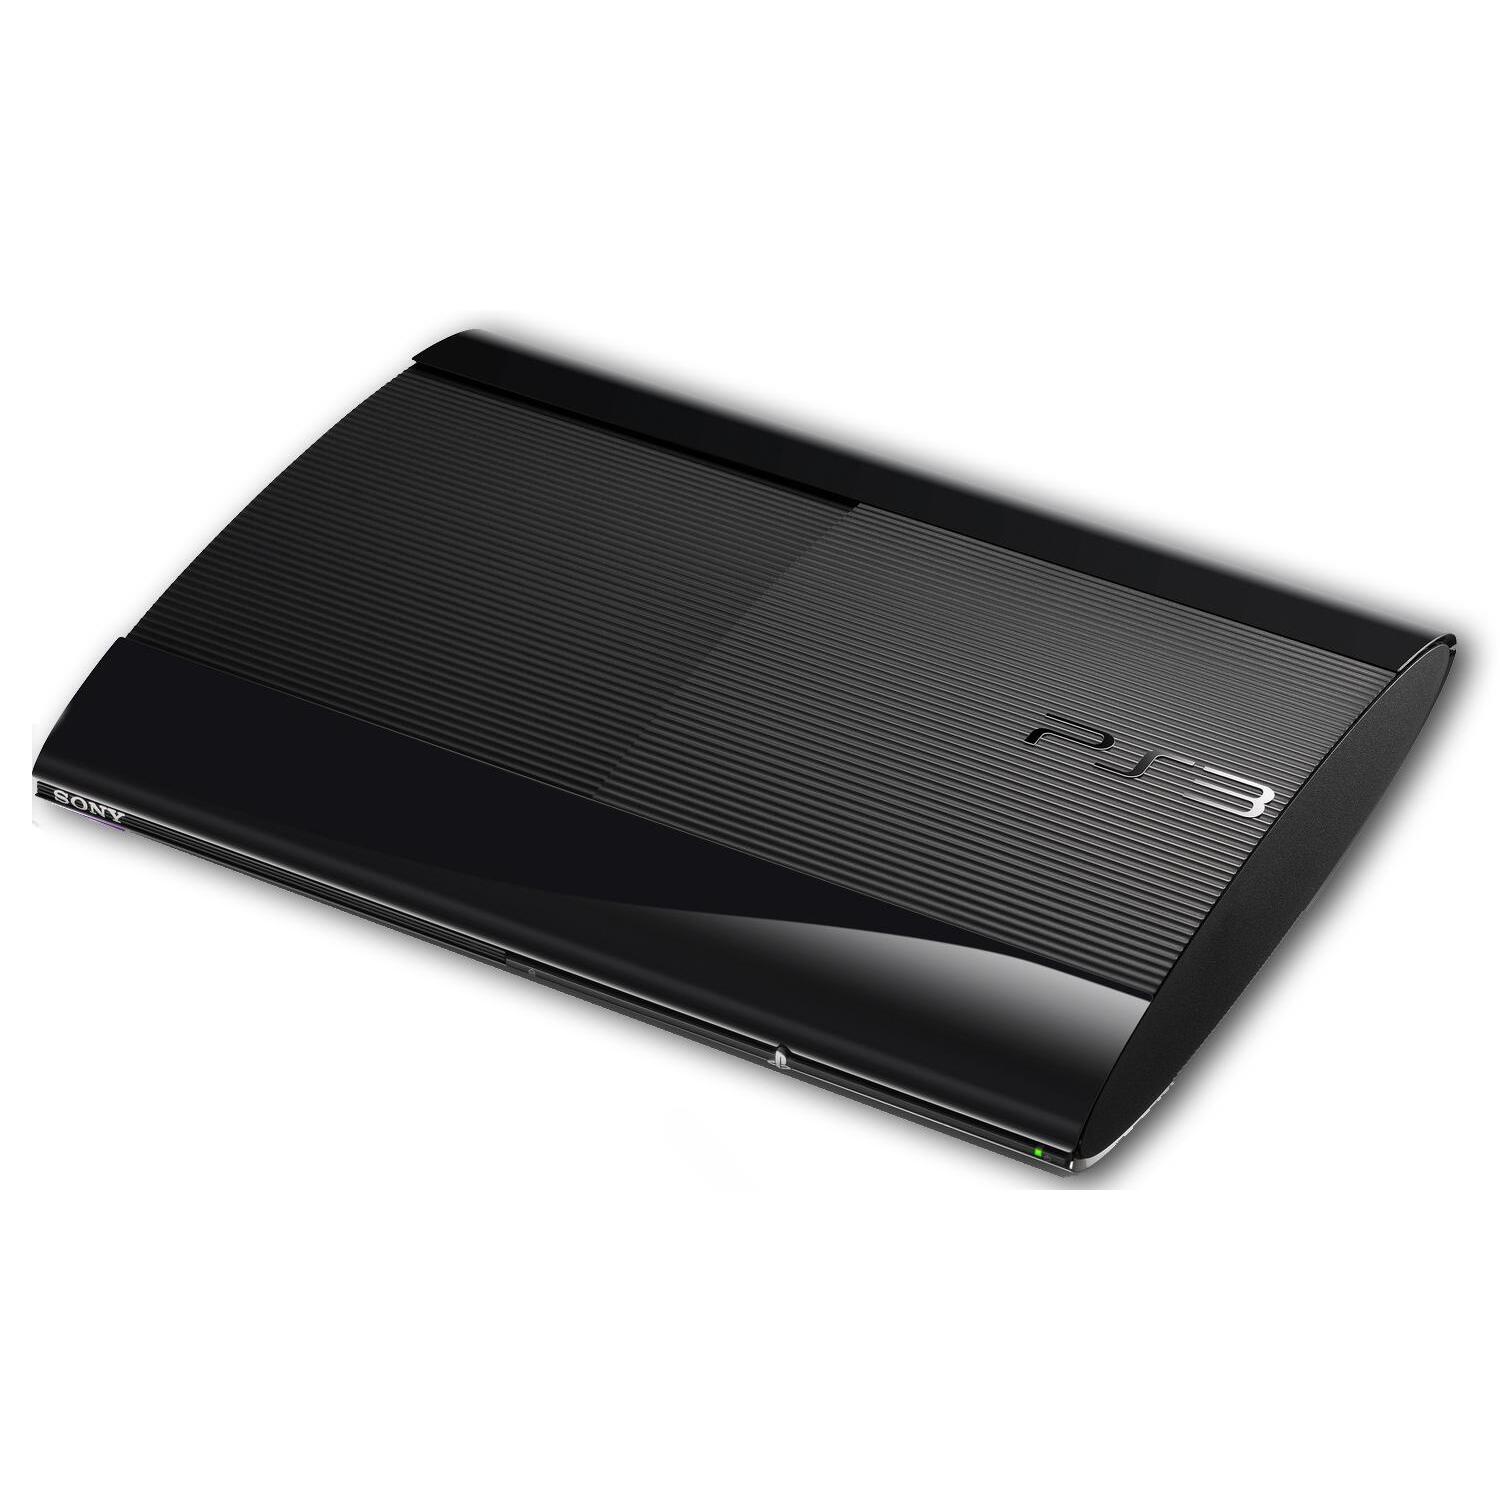 bevind zich Onbevreesd Bezwaar PS3 Console: Super Slim (Nieuwste model) (PS3) kopen - €76